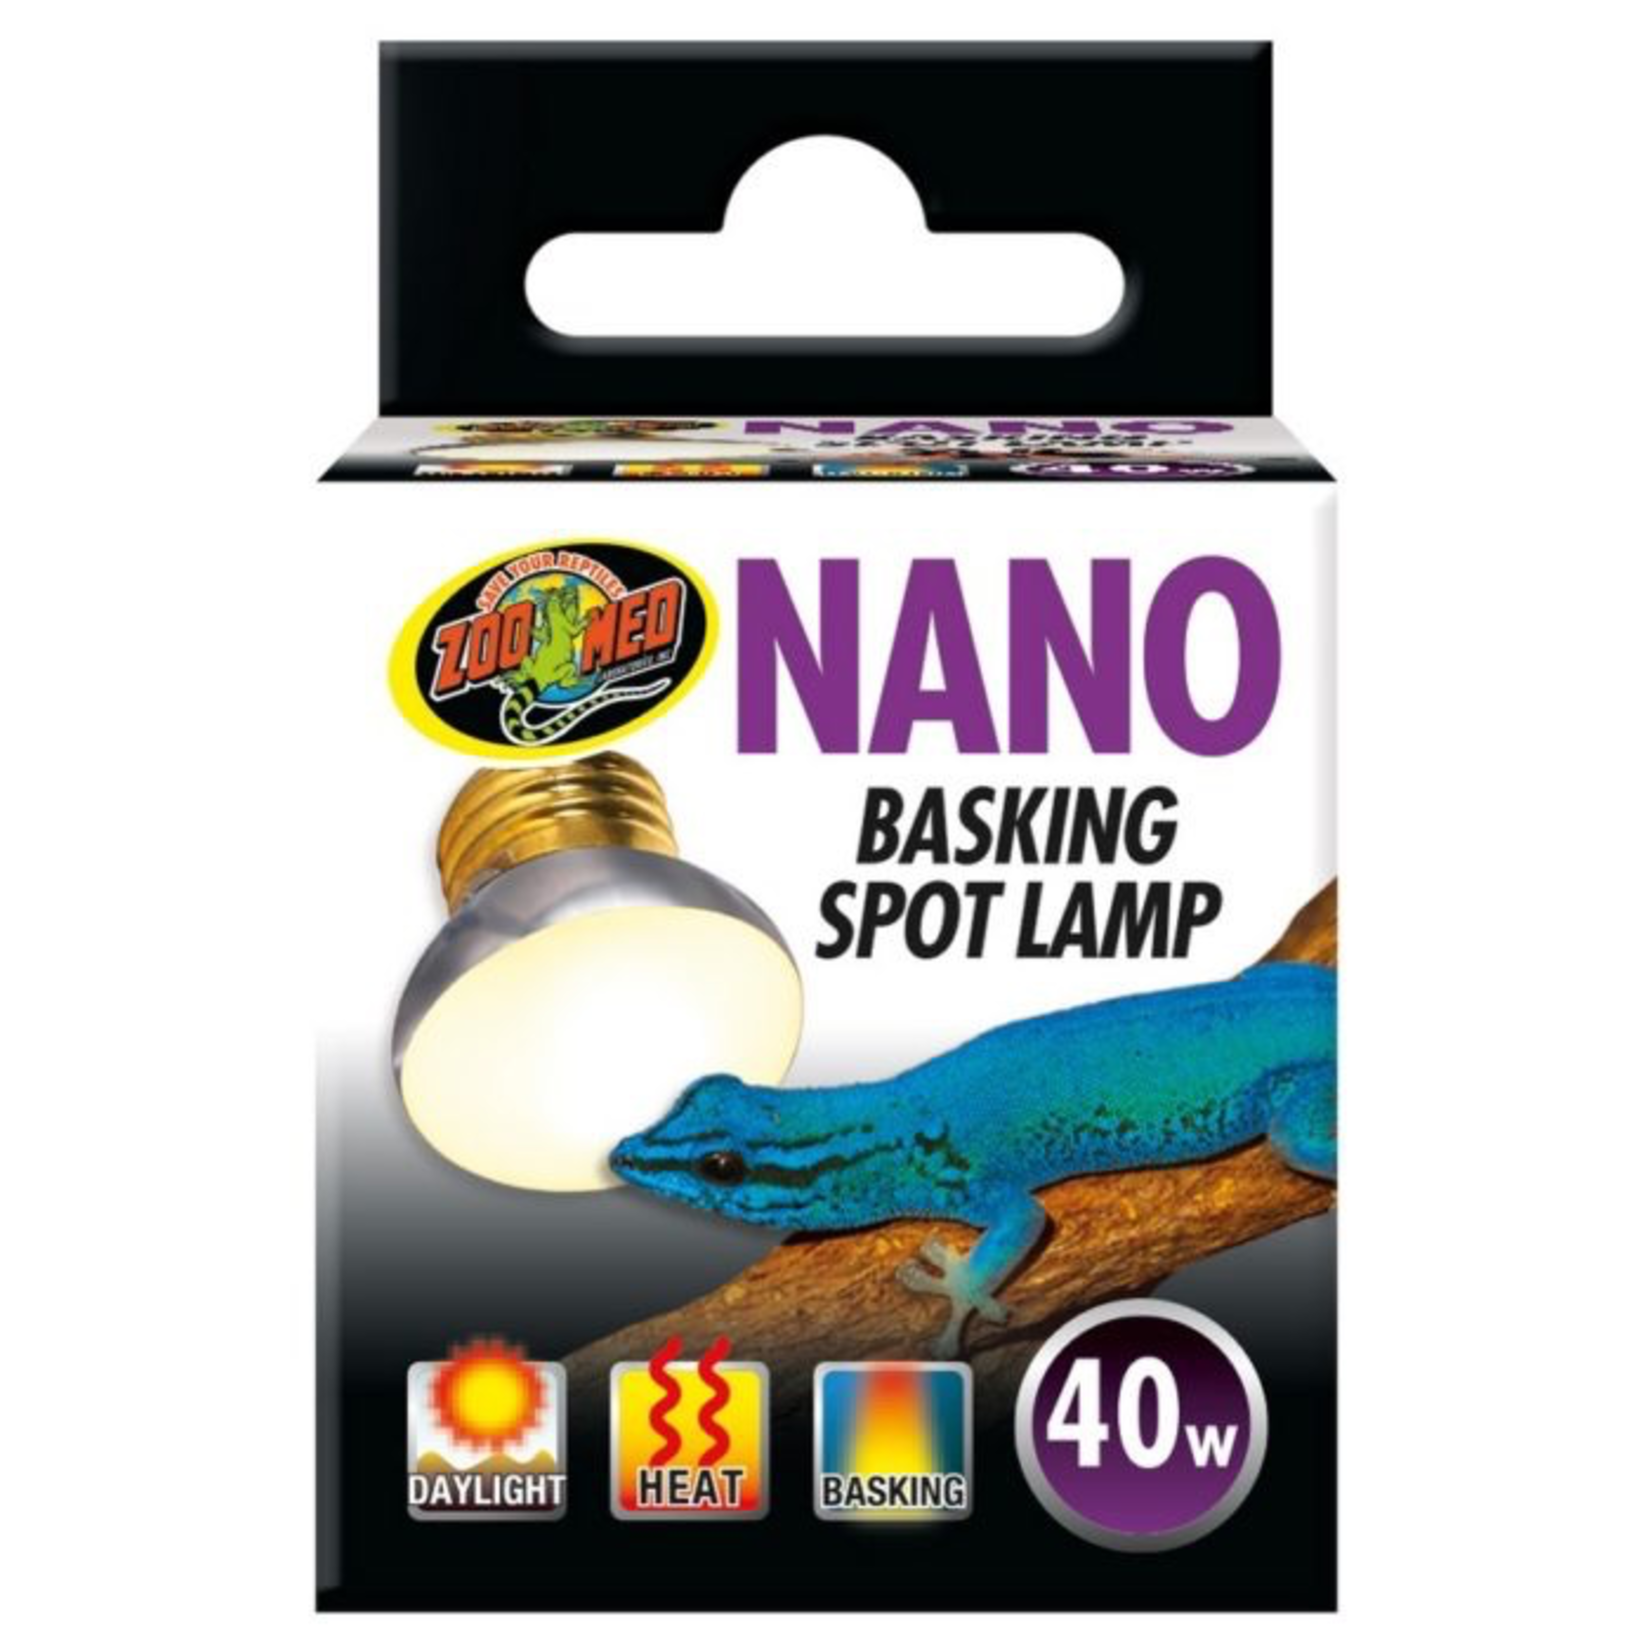 Nano Basking Spot Lamp - 40W